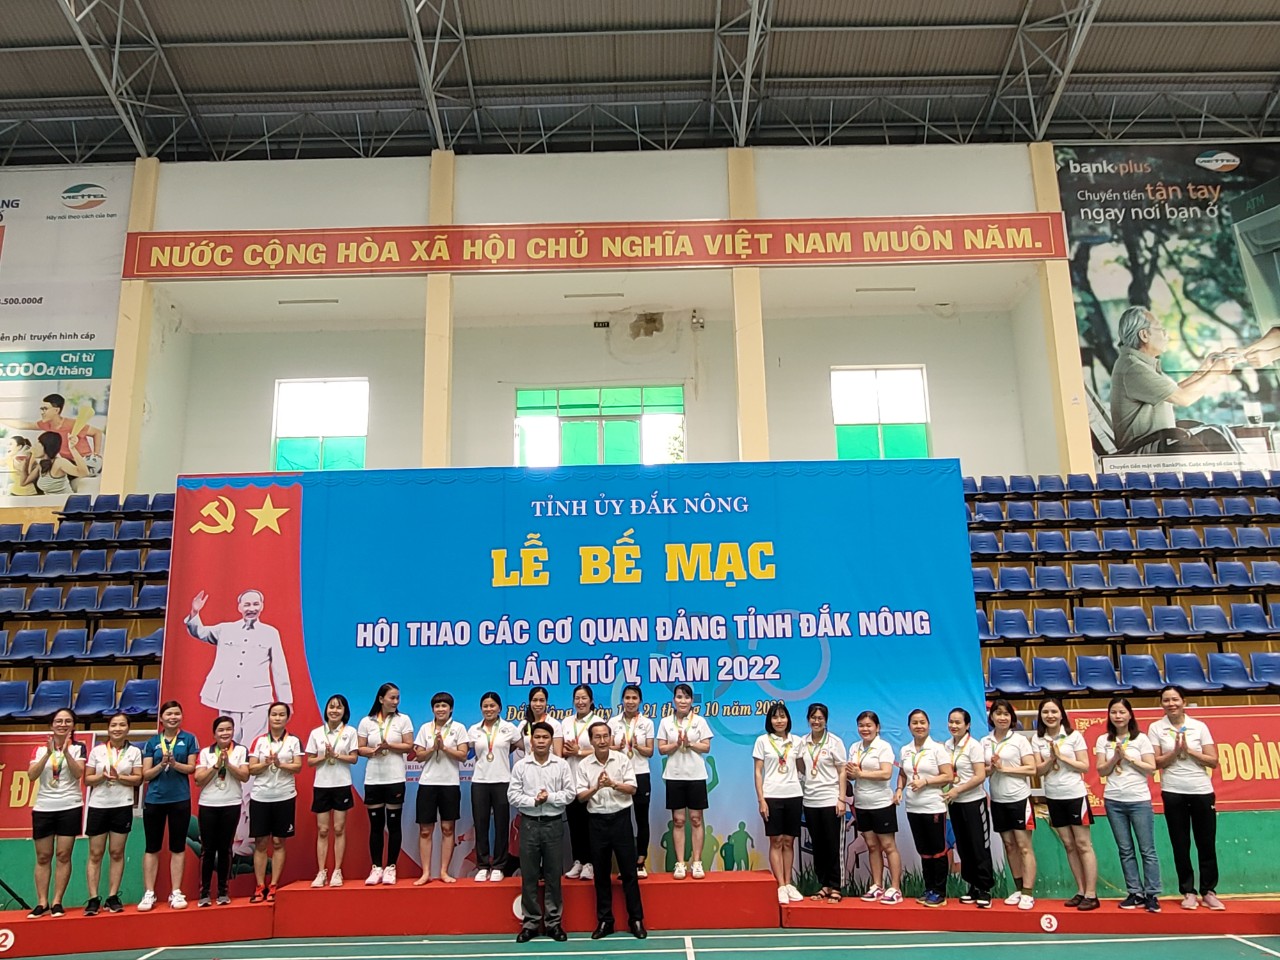 Hội thao các cơ quan Đảng tỉnh Đắk Nông lần thứ V năm 2022